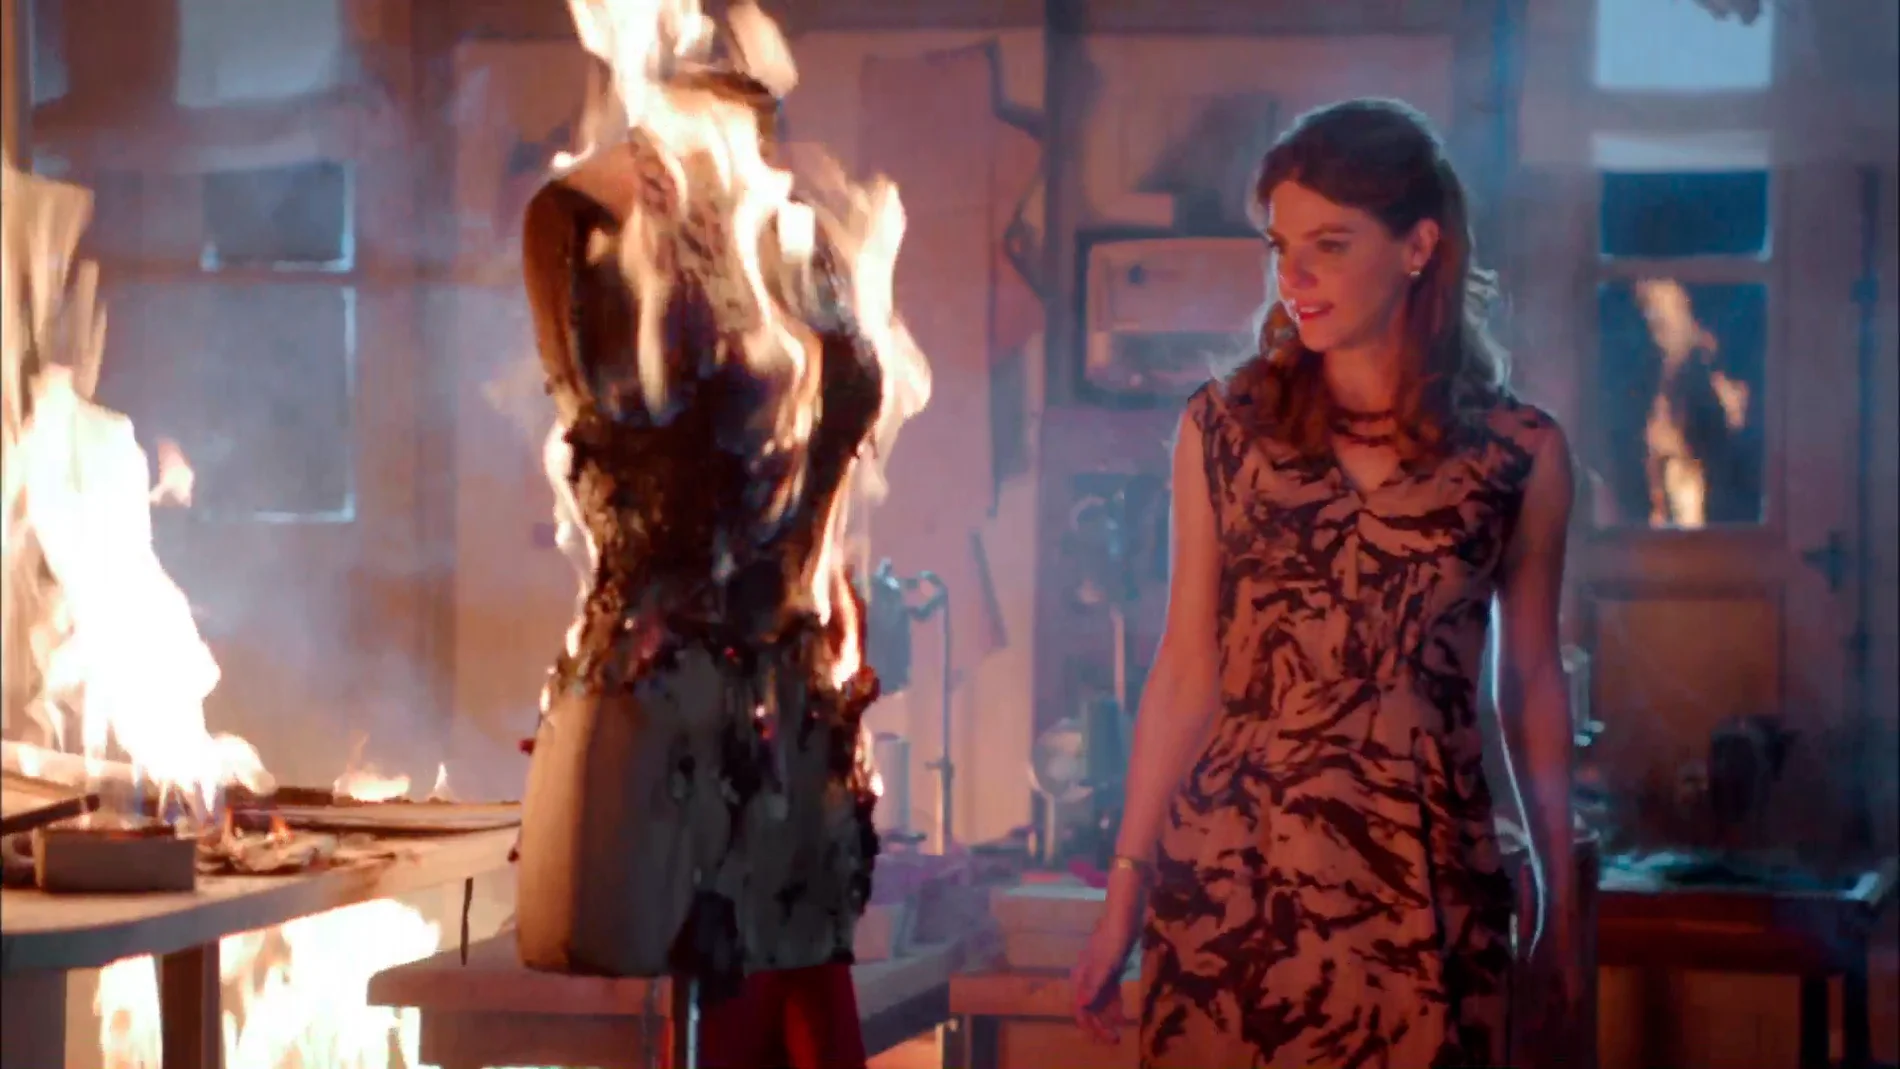 Cristina prende fuego a las galerías acabando con los sueños de Ana